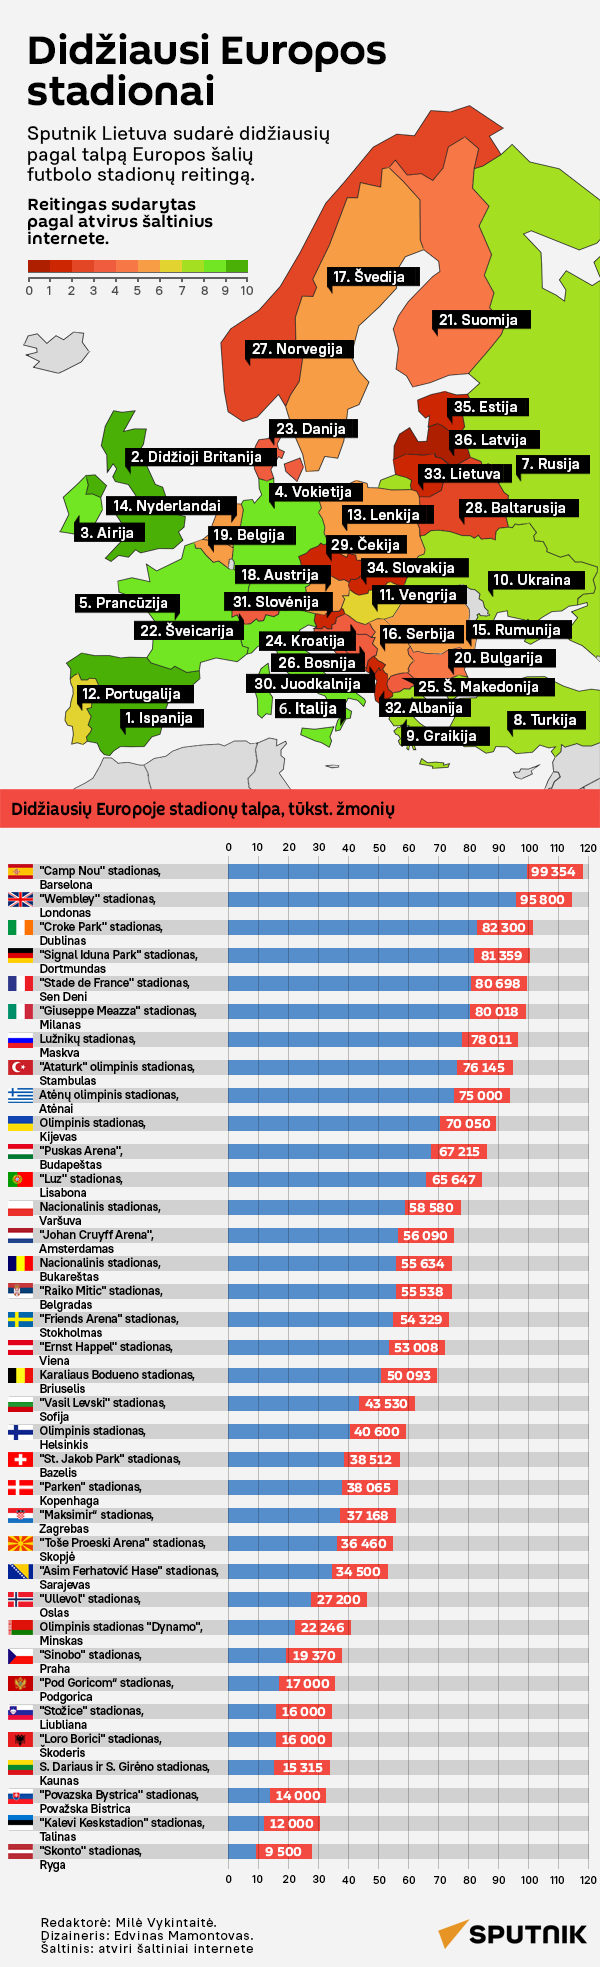 Didžiausi Europos stadionai - Sputnik Lietuva